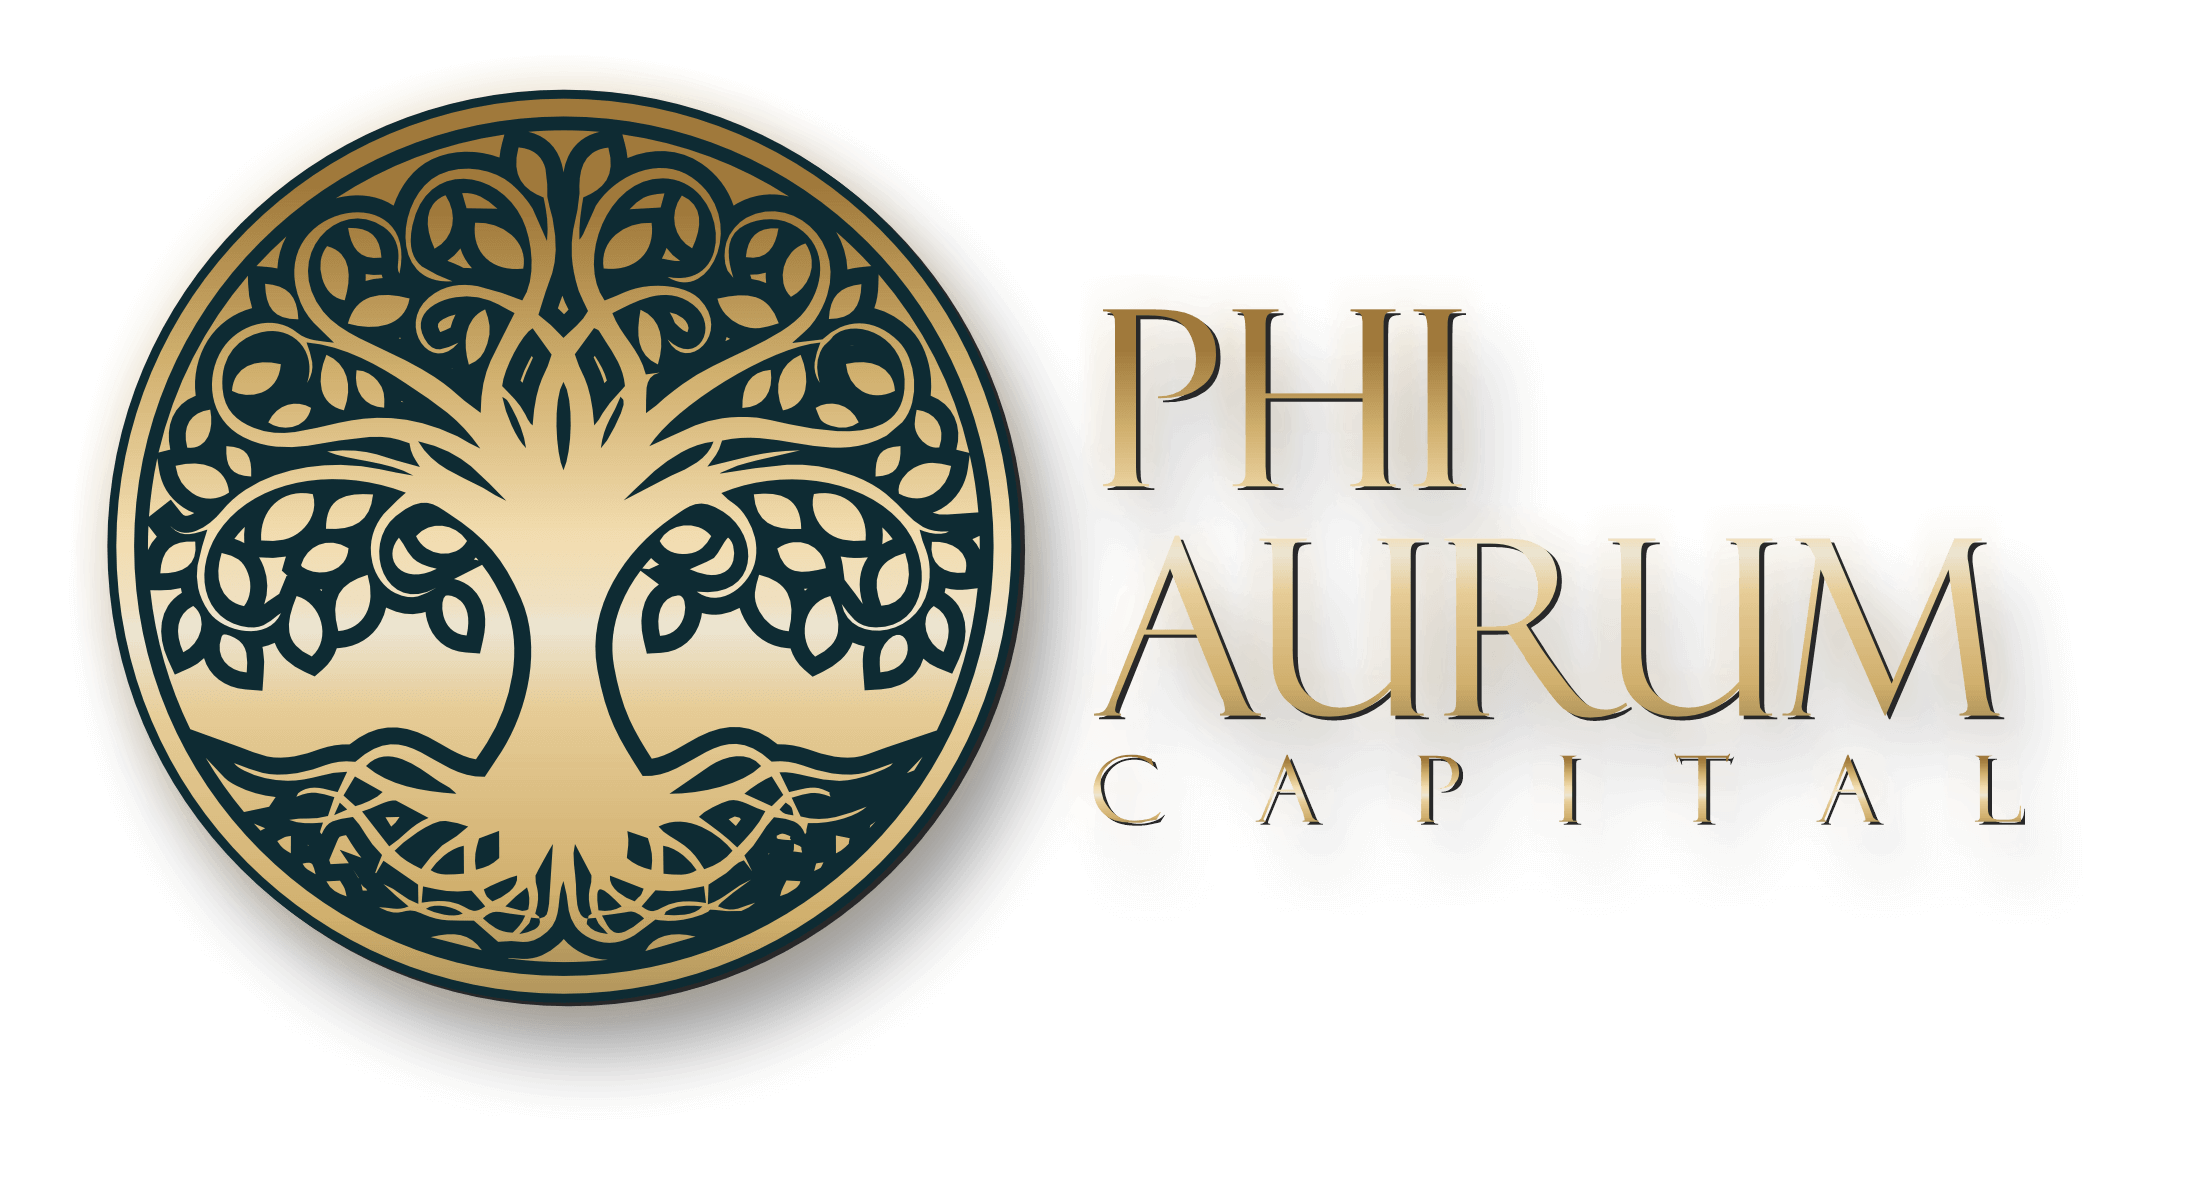 Phiaurum Capital